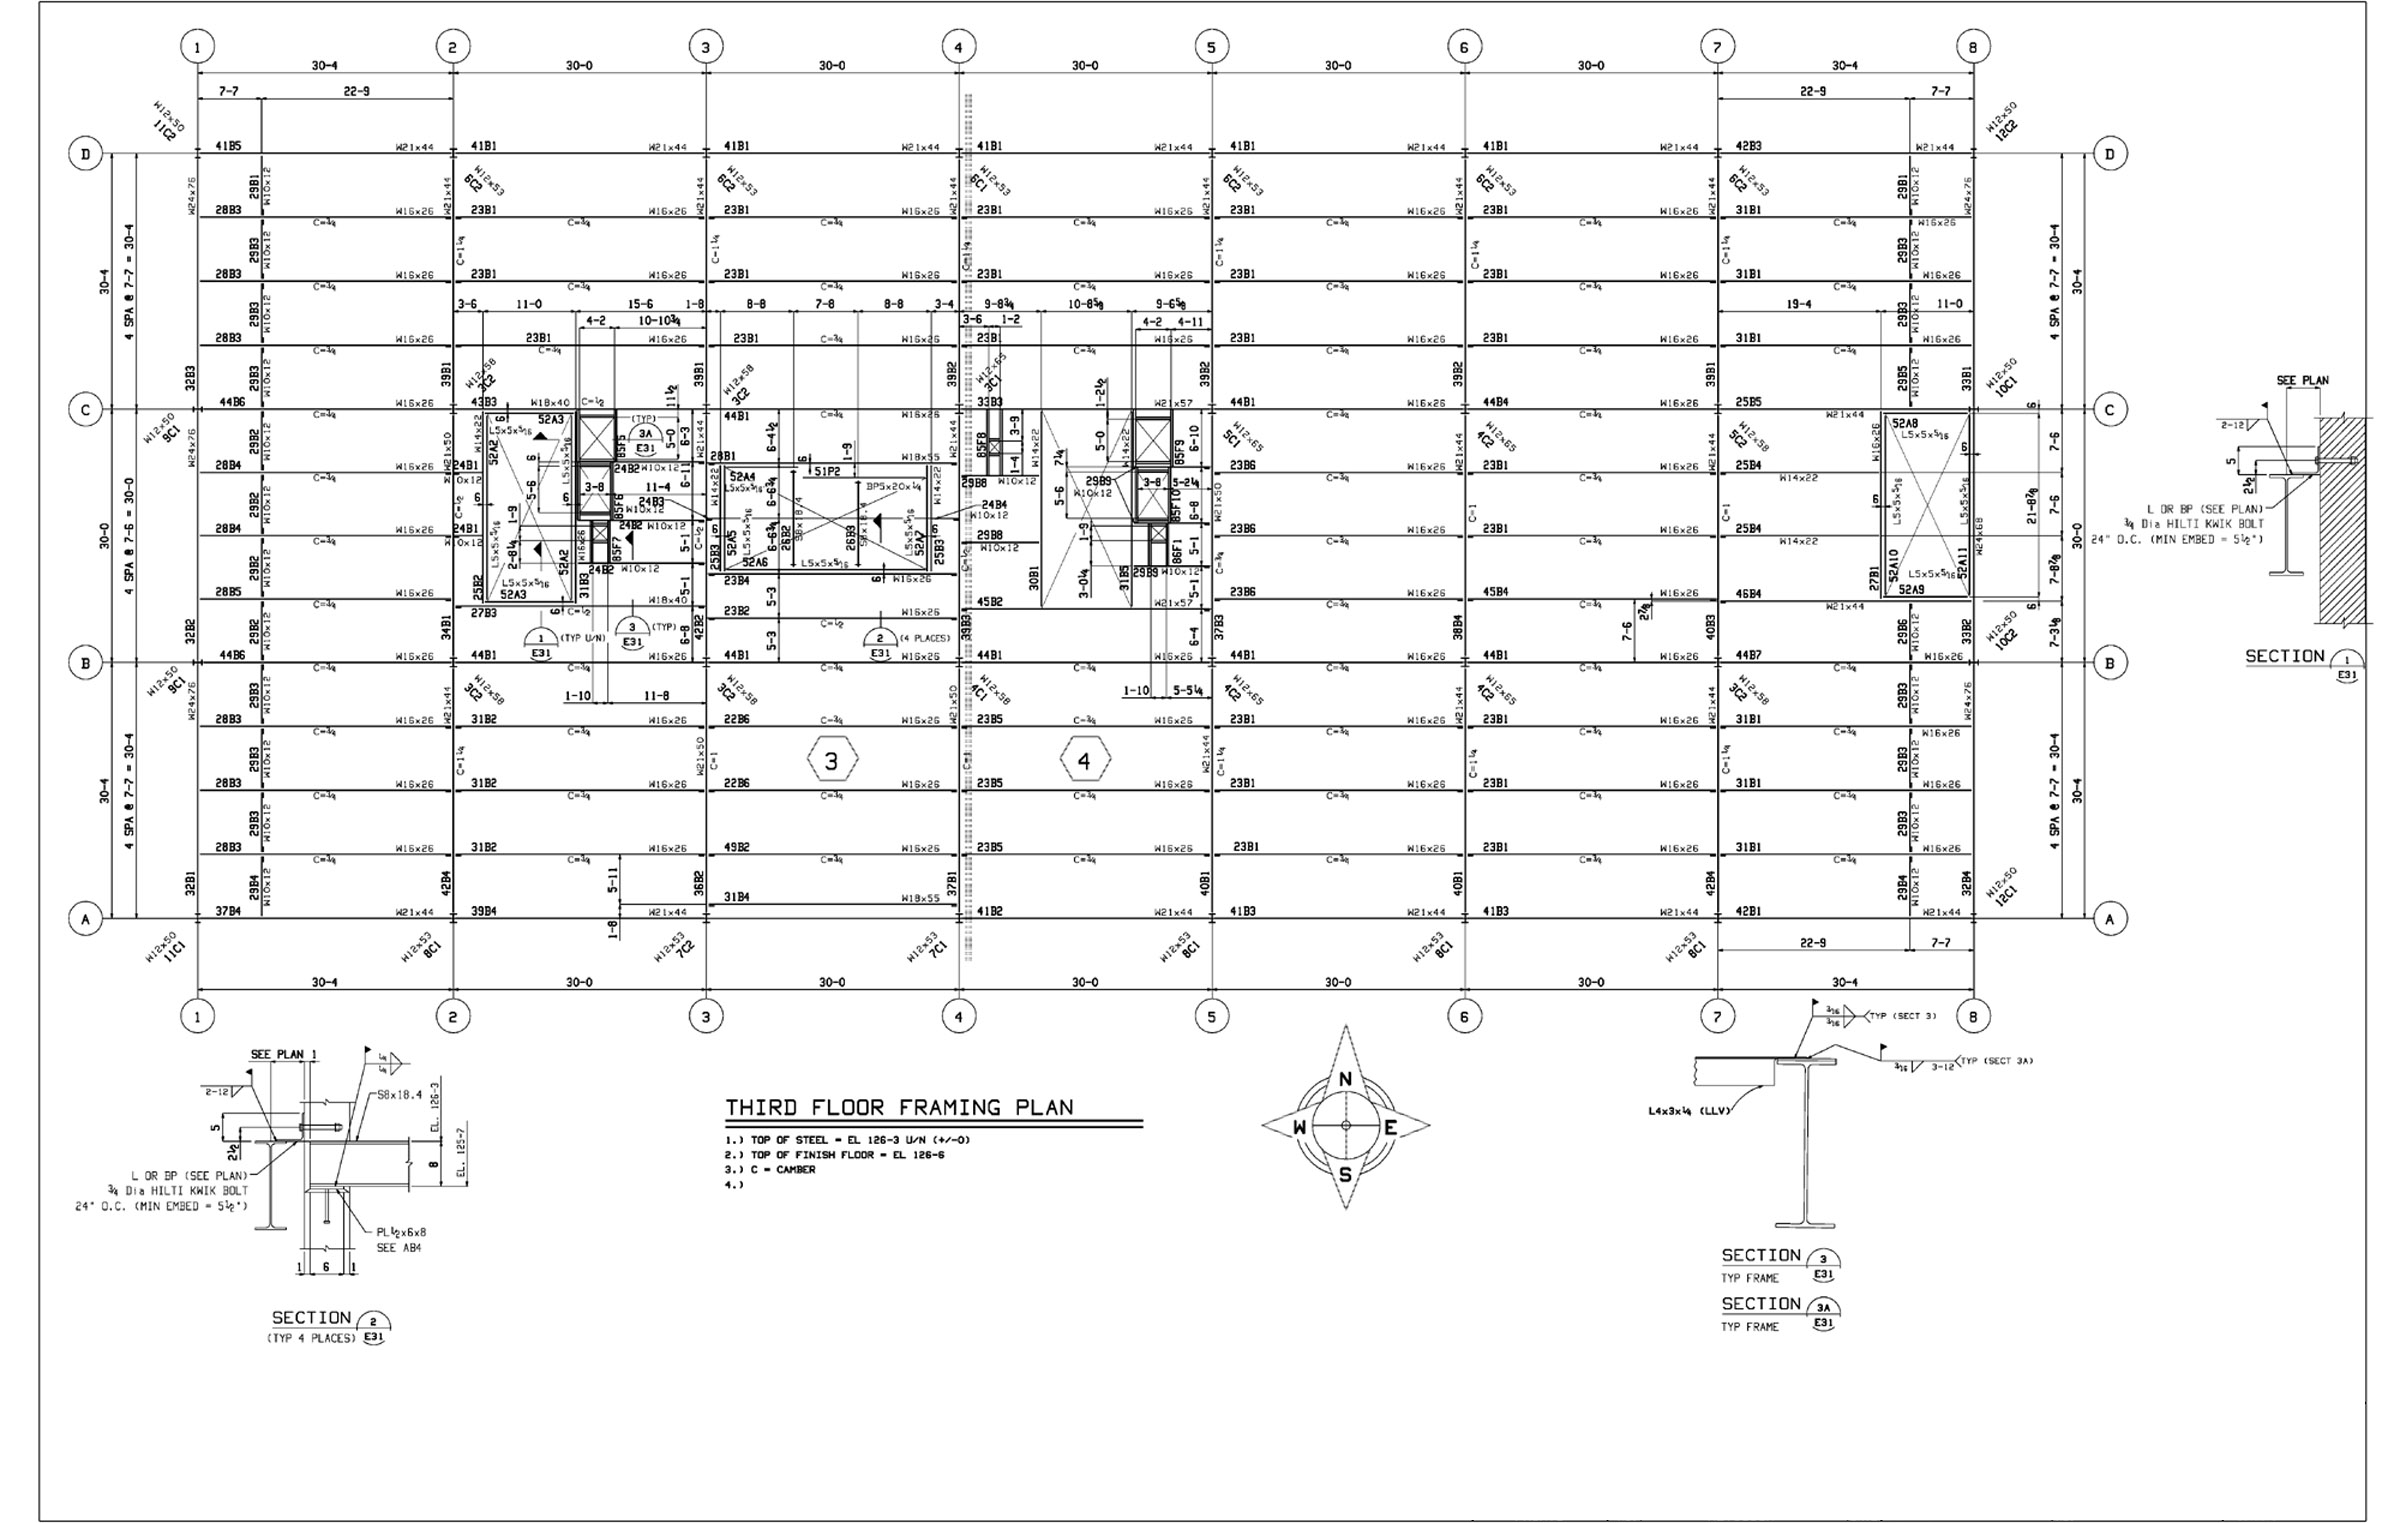 Drawings / Third Floor Framing Plan.jpg